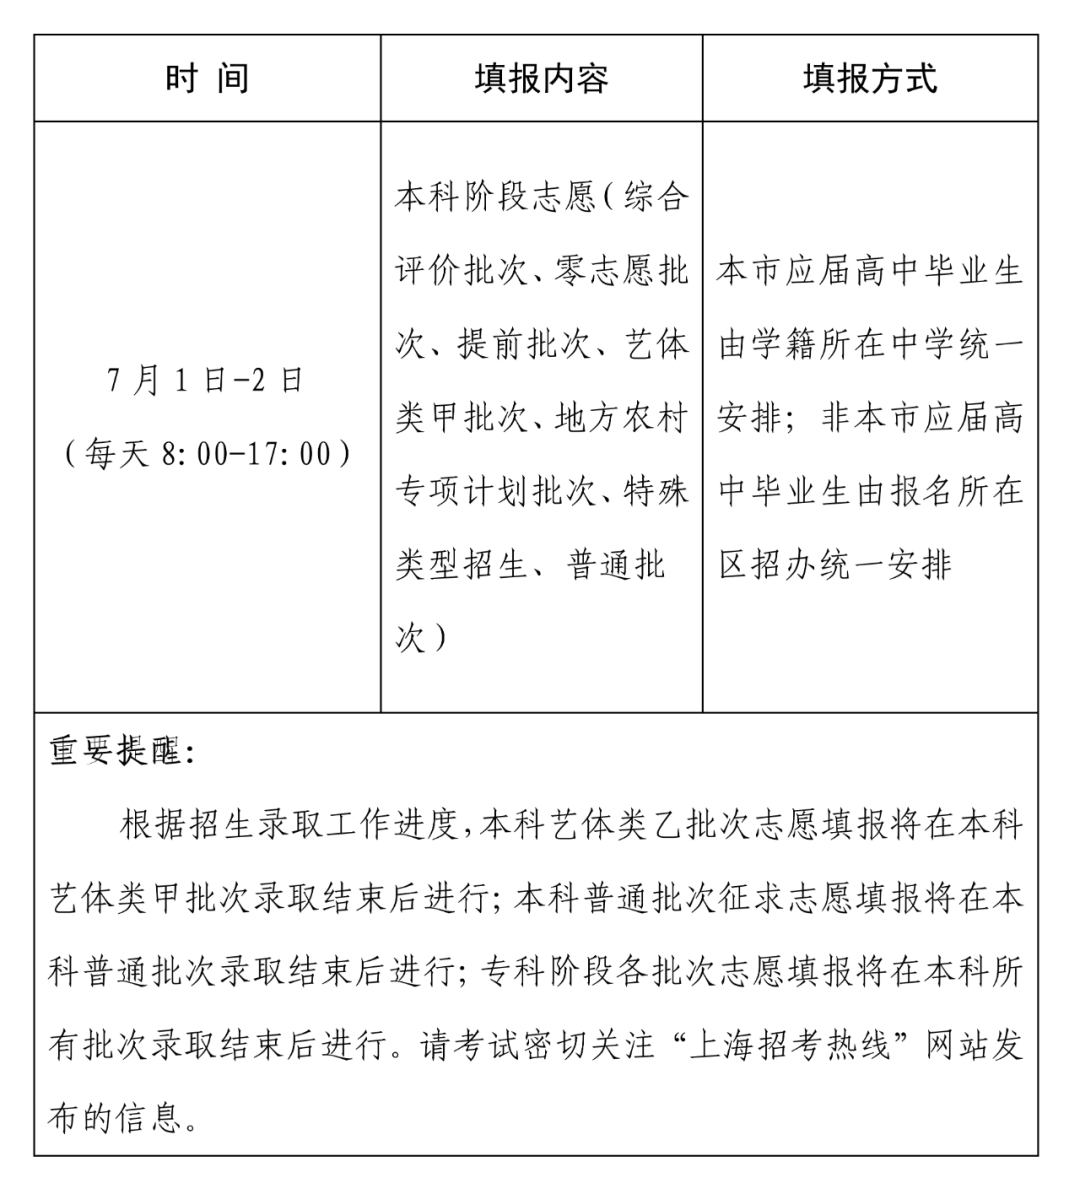 填报志愿时间湖南2021_志愿填报时间湖南省_湖南志愿填报时间